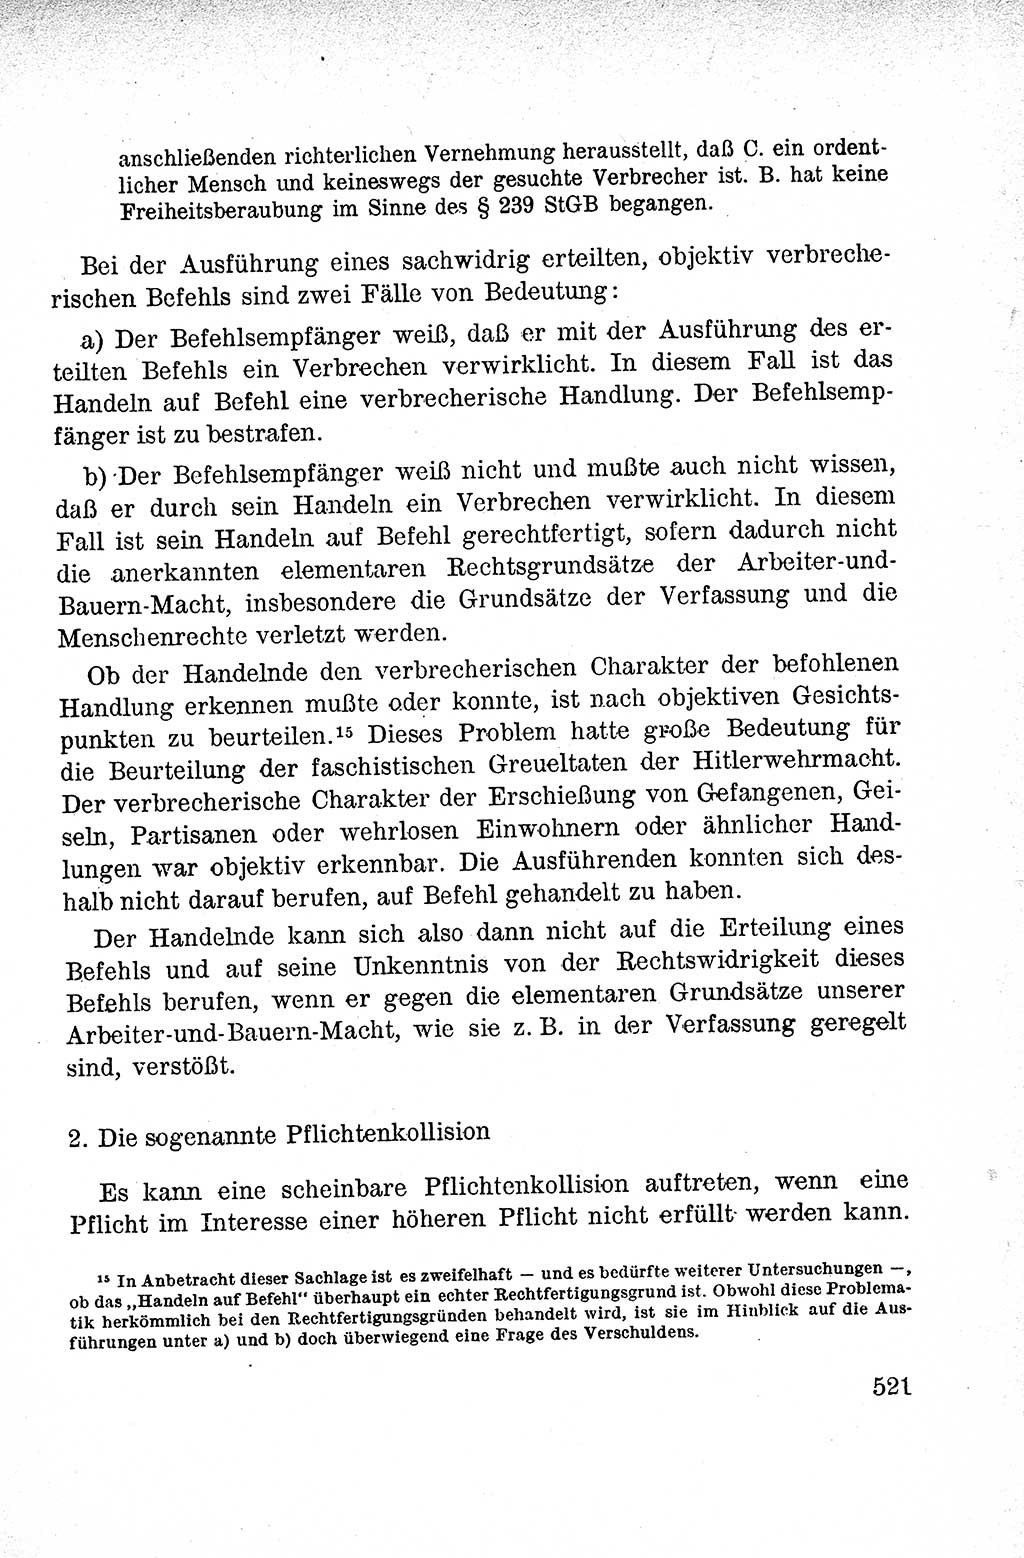 Lehrbuch des Strafrechts der Deutschen Demokratischen Republik (DDR), Allgemeiner Teil 1959, Seite 521 (Lb. Strafr. DDR AT 1959, S. 521)